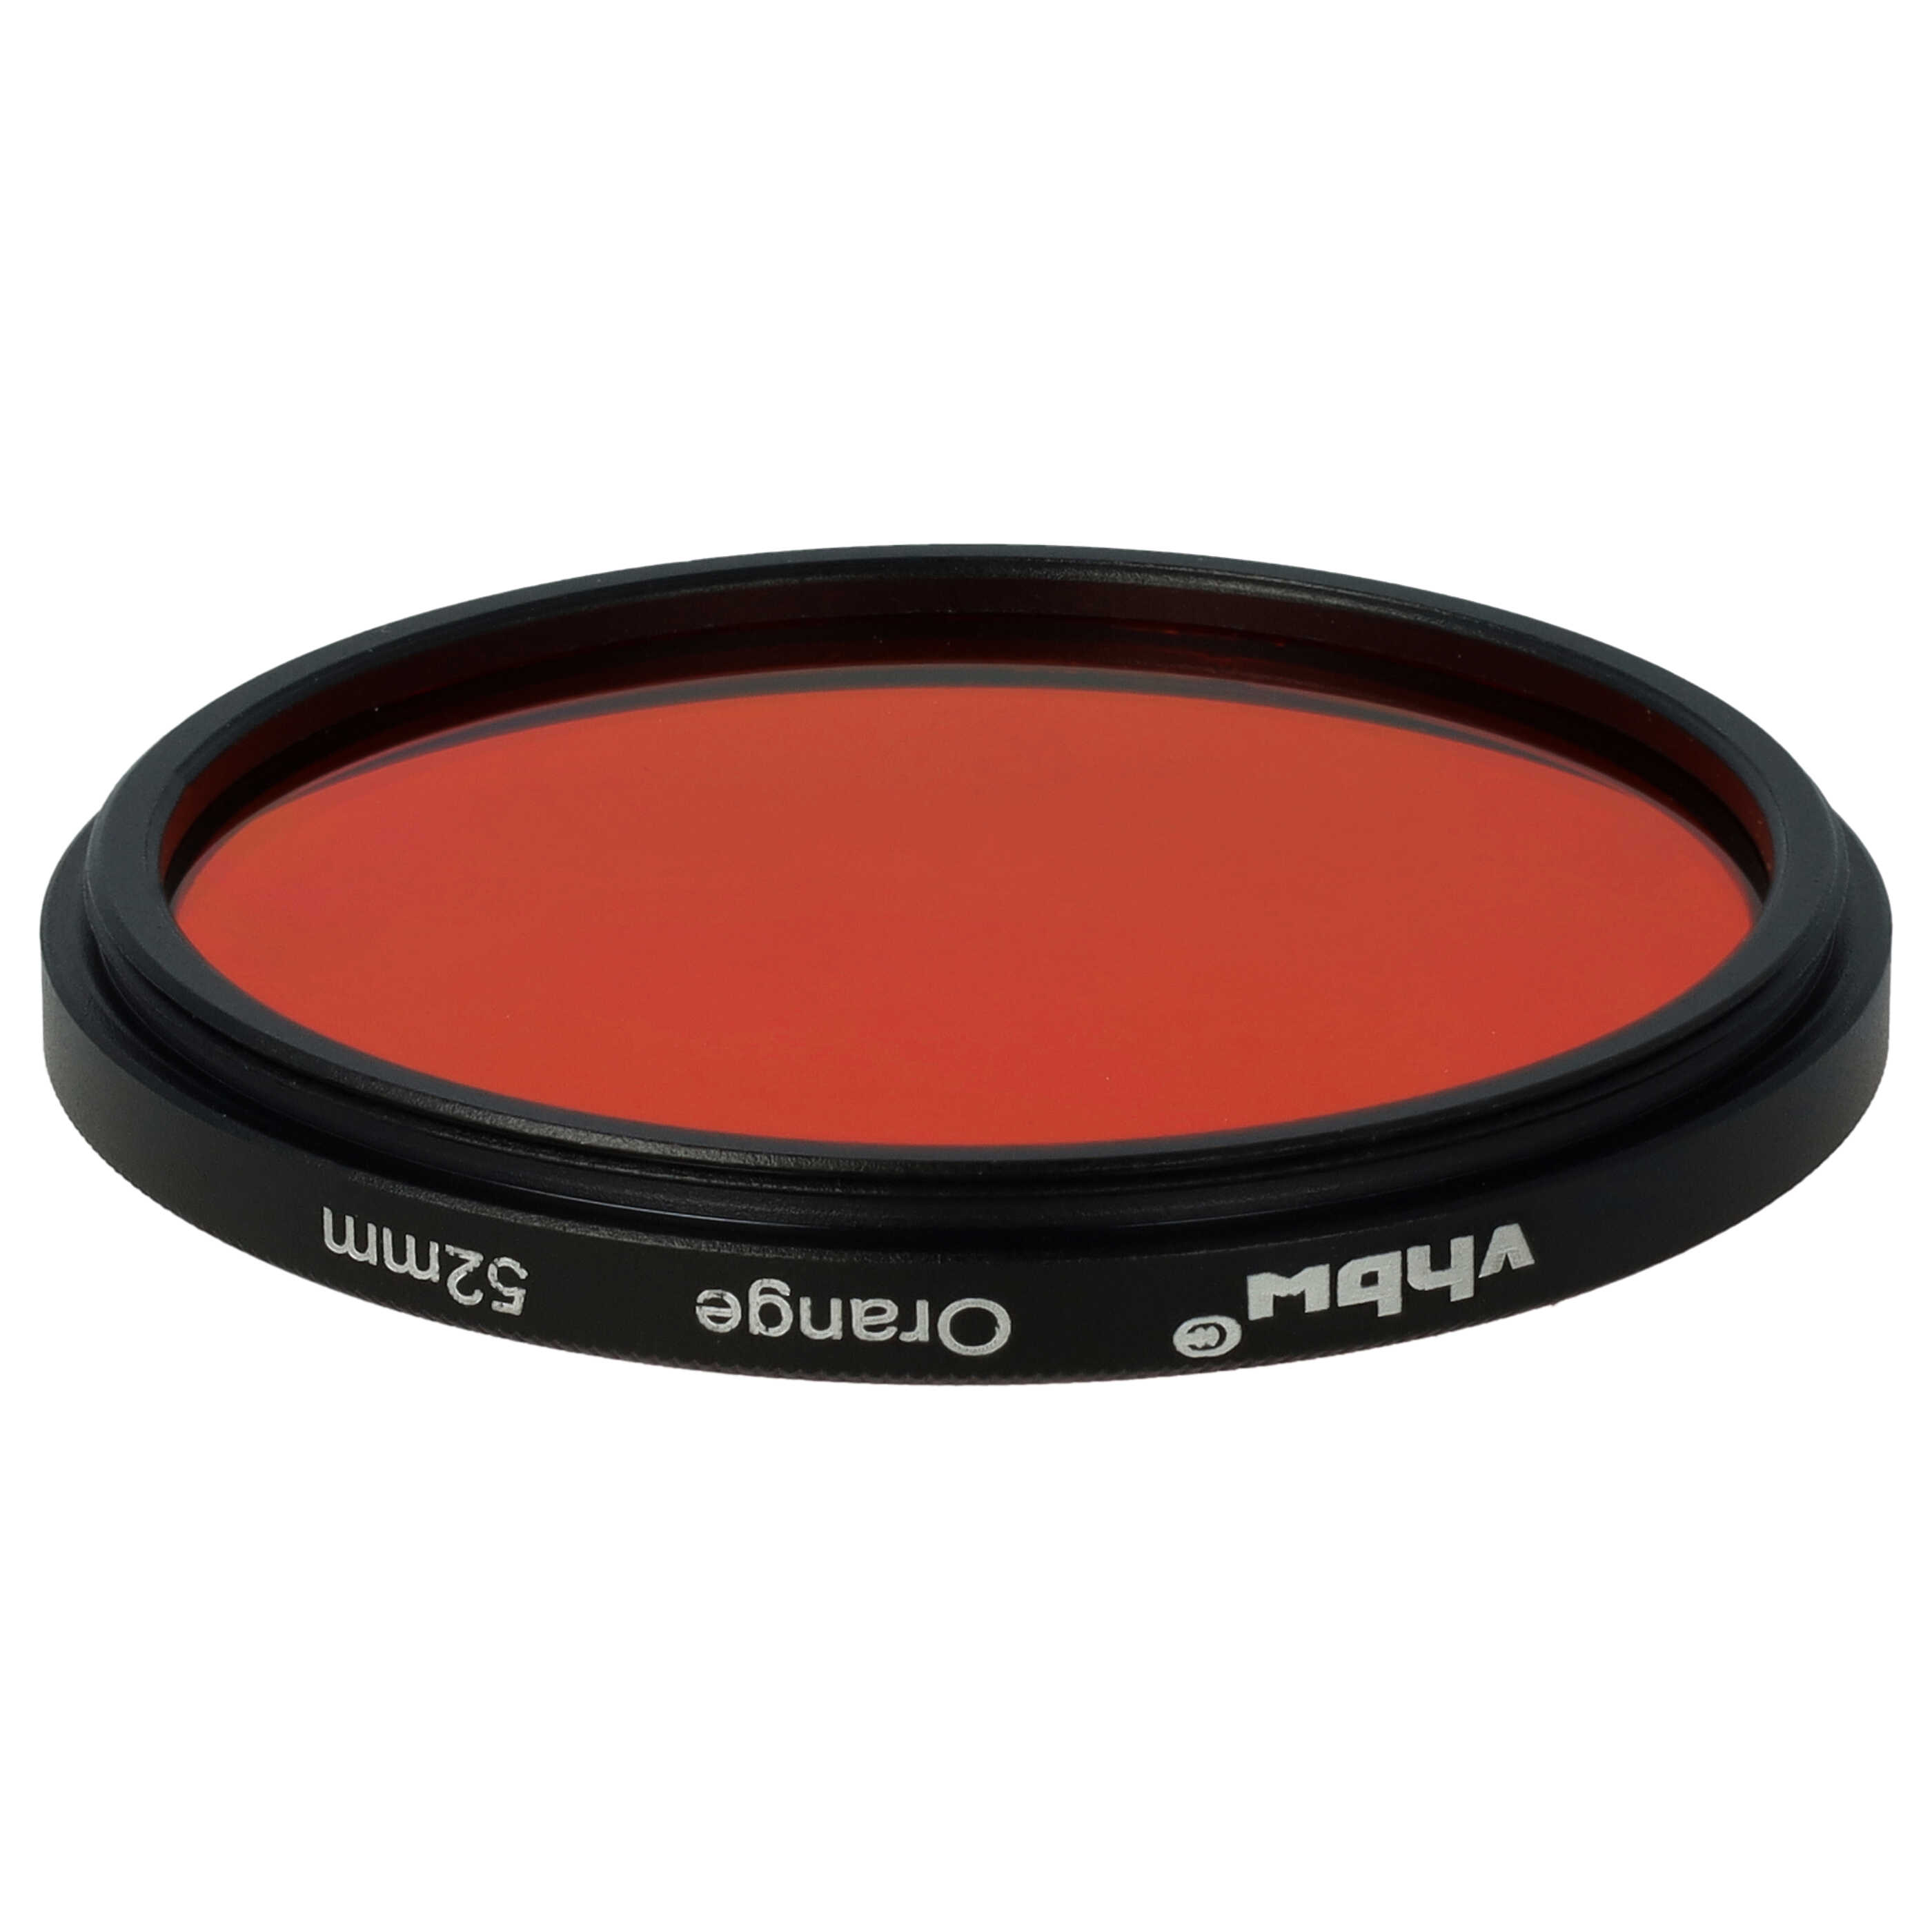 Farbfilter orange passend für Kamera Objektive mit 52 mm Filtergewinde - Orangefilter